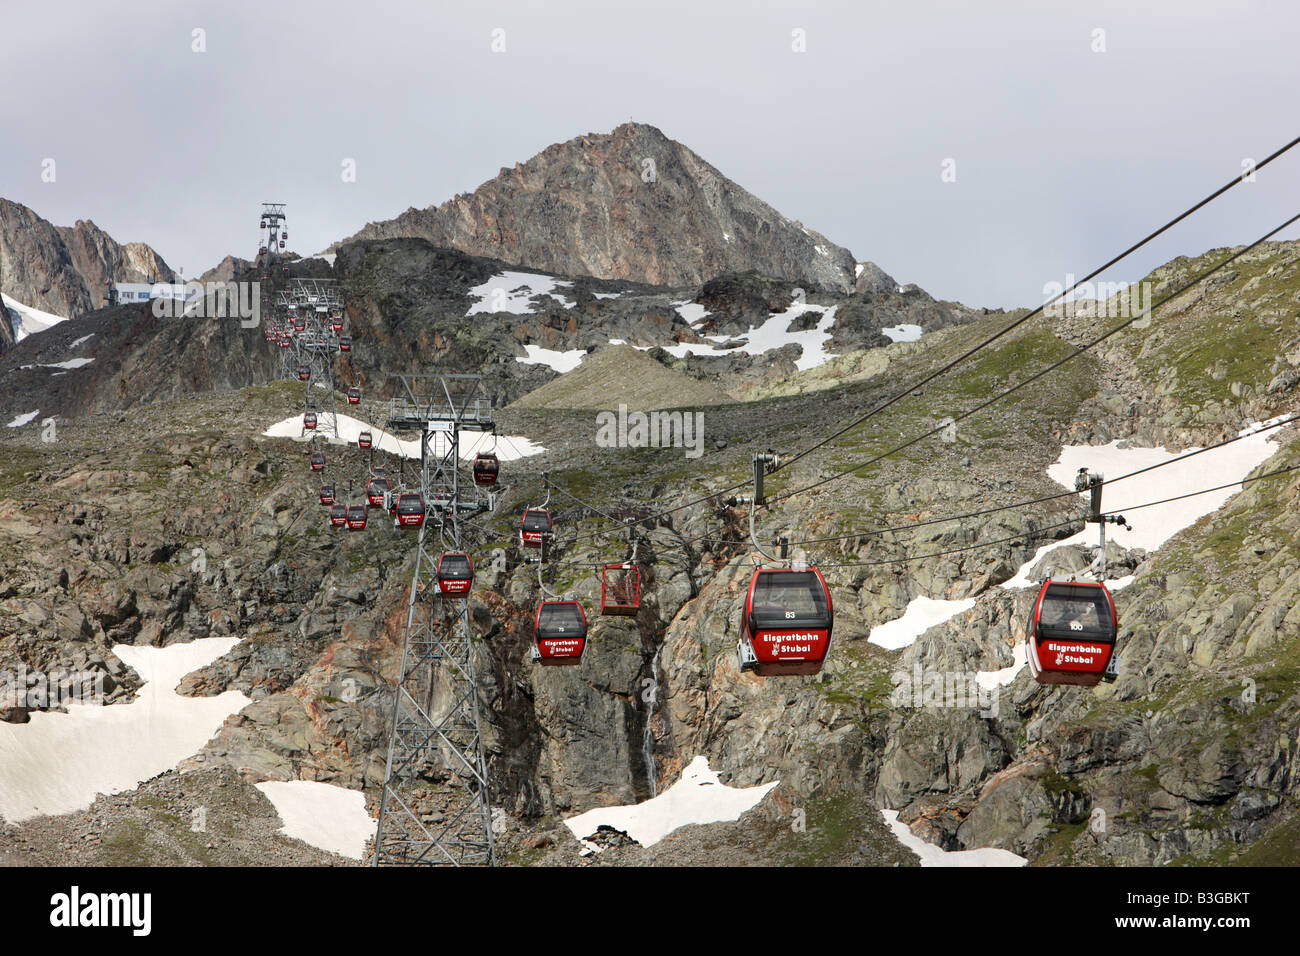 AUT, Austria, Tyrol: Stubaital, Stubai Valley. Driving with the ropeway to the Stubai glacier. Stock Photo